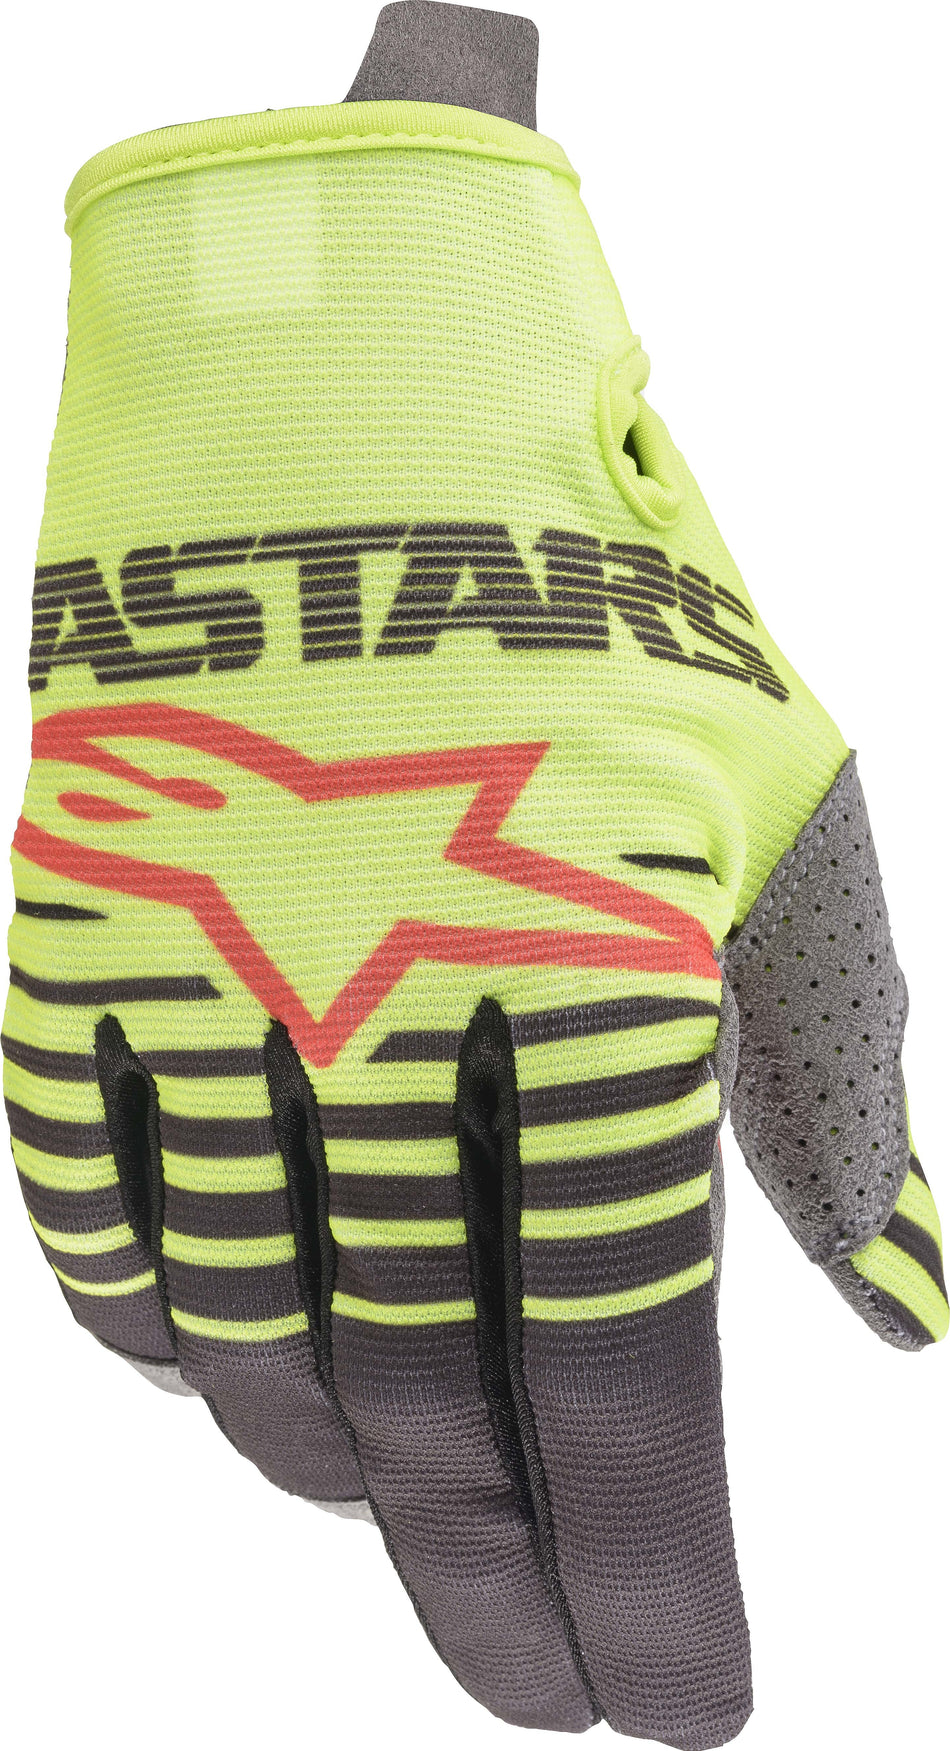 ALPINESTARS Radar Gloves Yellow/Anthracite Md 3561820-559-M